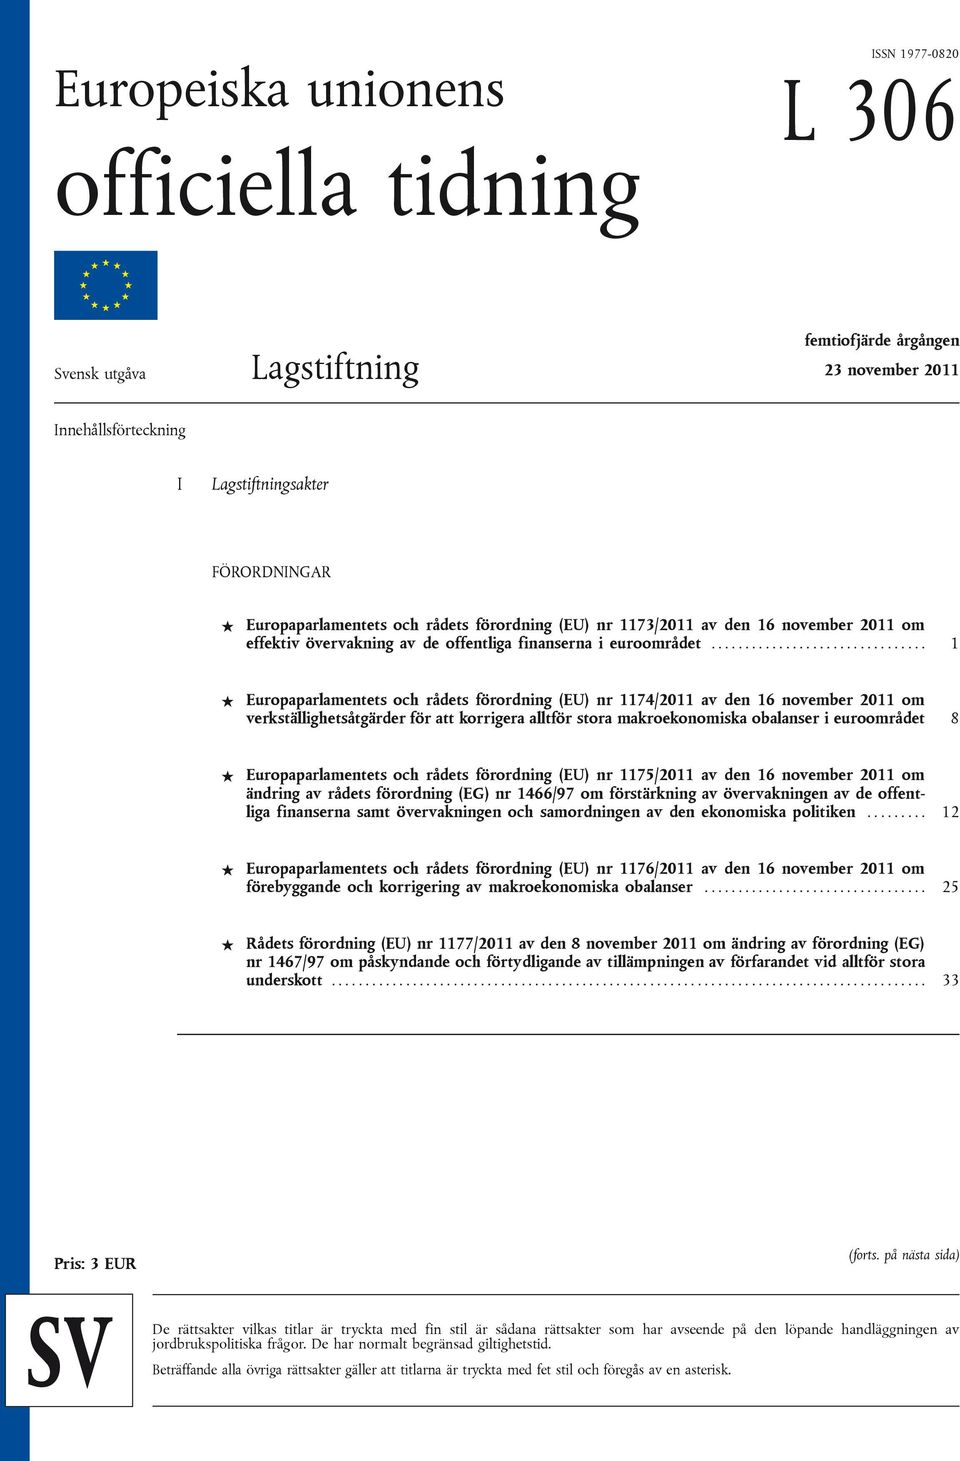 ............................... 1 Europaparlamentets och rådets förordning (EU) nr 1174/2011 av den 16 november 2011 om verkställighetsåtgärder för att korrigera alltför stora makroekonomiska